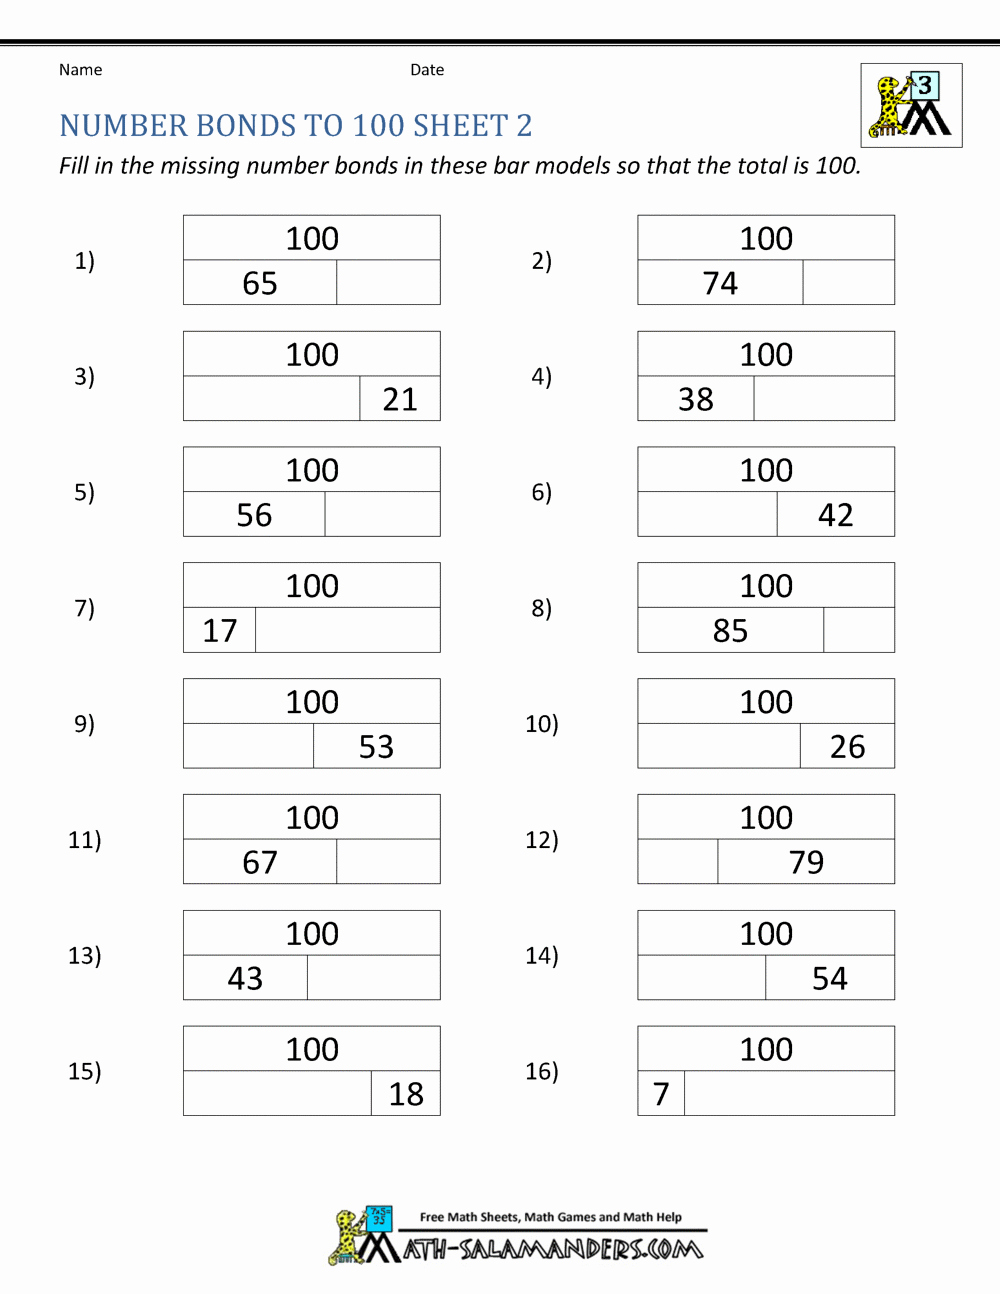 Number Bonds to 10 Worksheet New Math Worksheets for Kids Number Bonds to 100